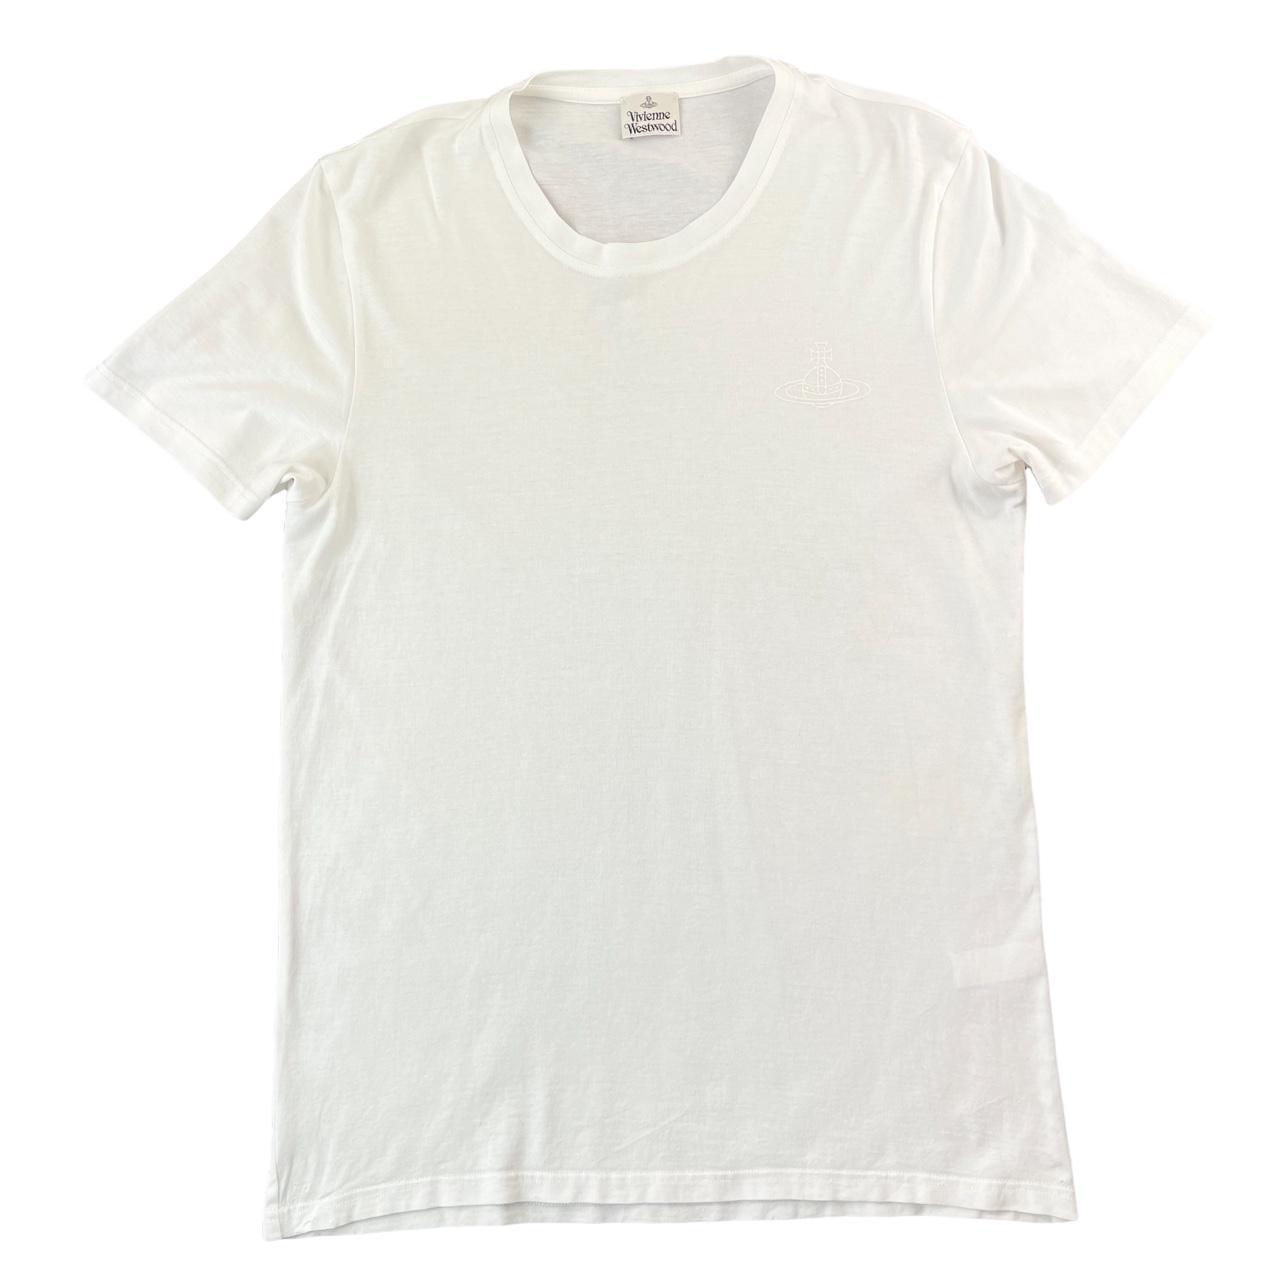 Vintage Vivienne Westwood orb t shirt woman’s size L... - Depop